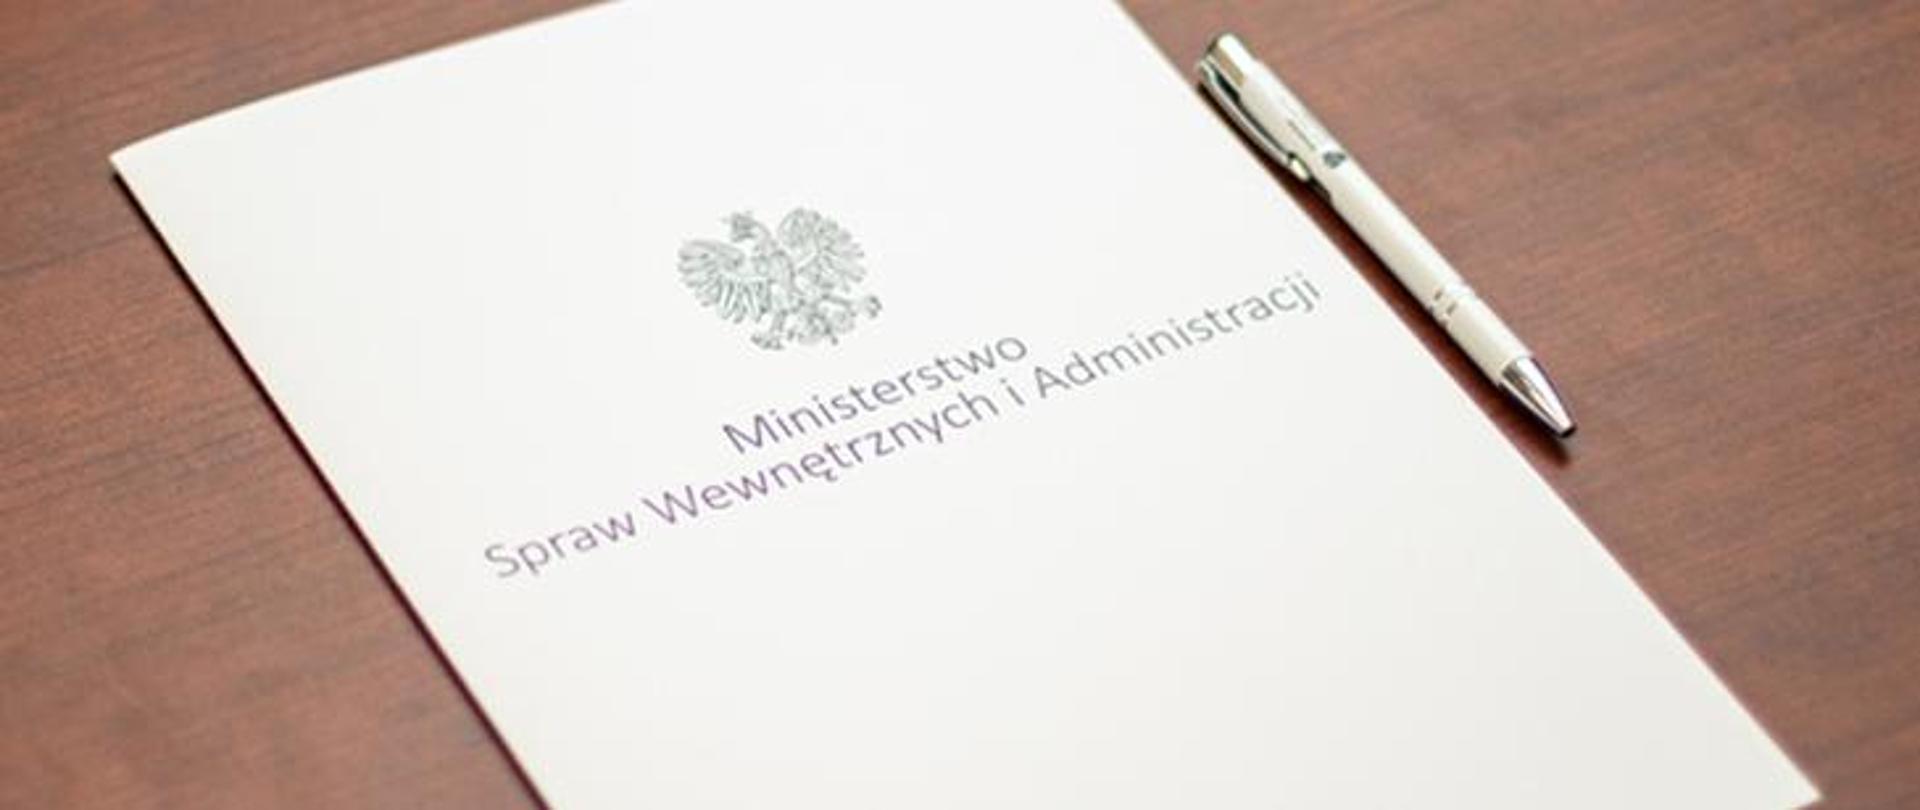 Teczka z napisem Ministerstwo Spraw Wewnętrznych i Administracji